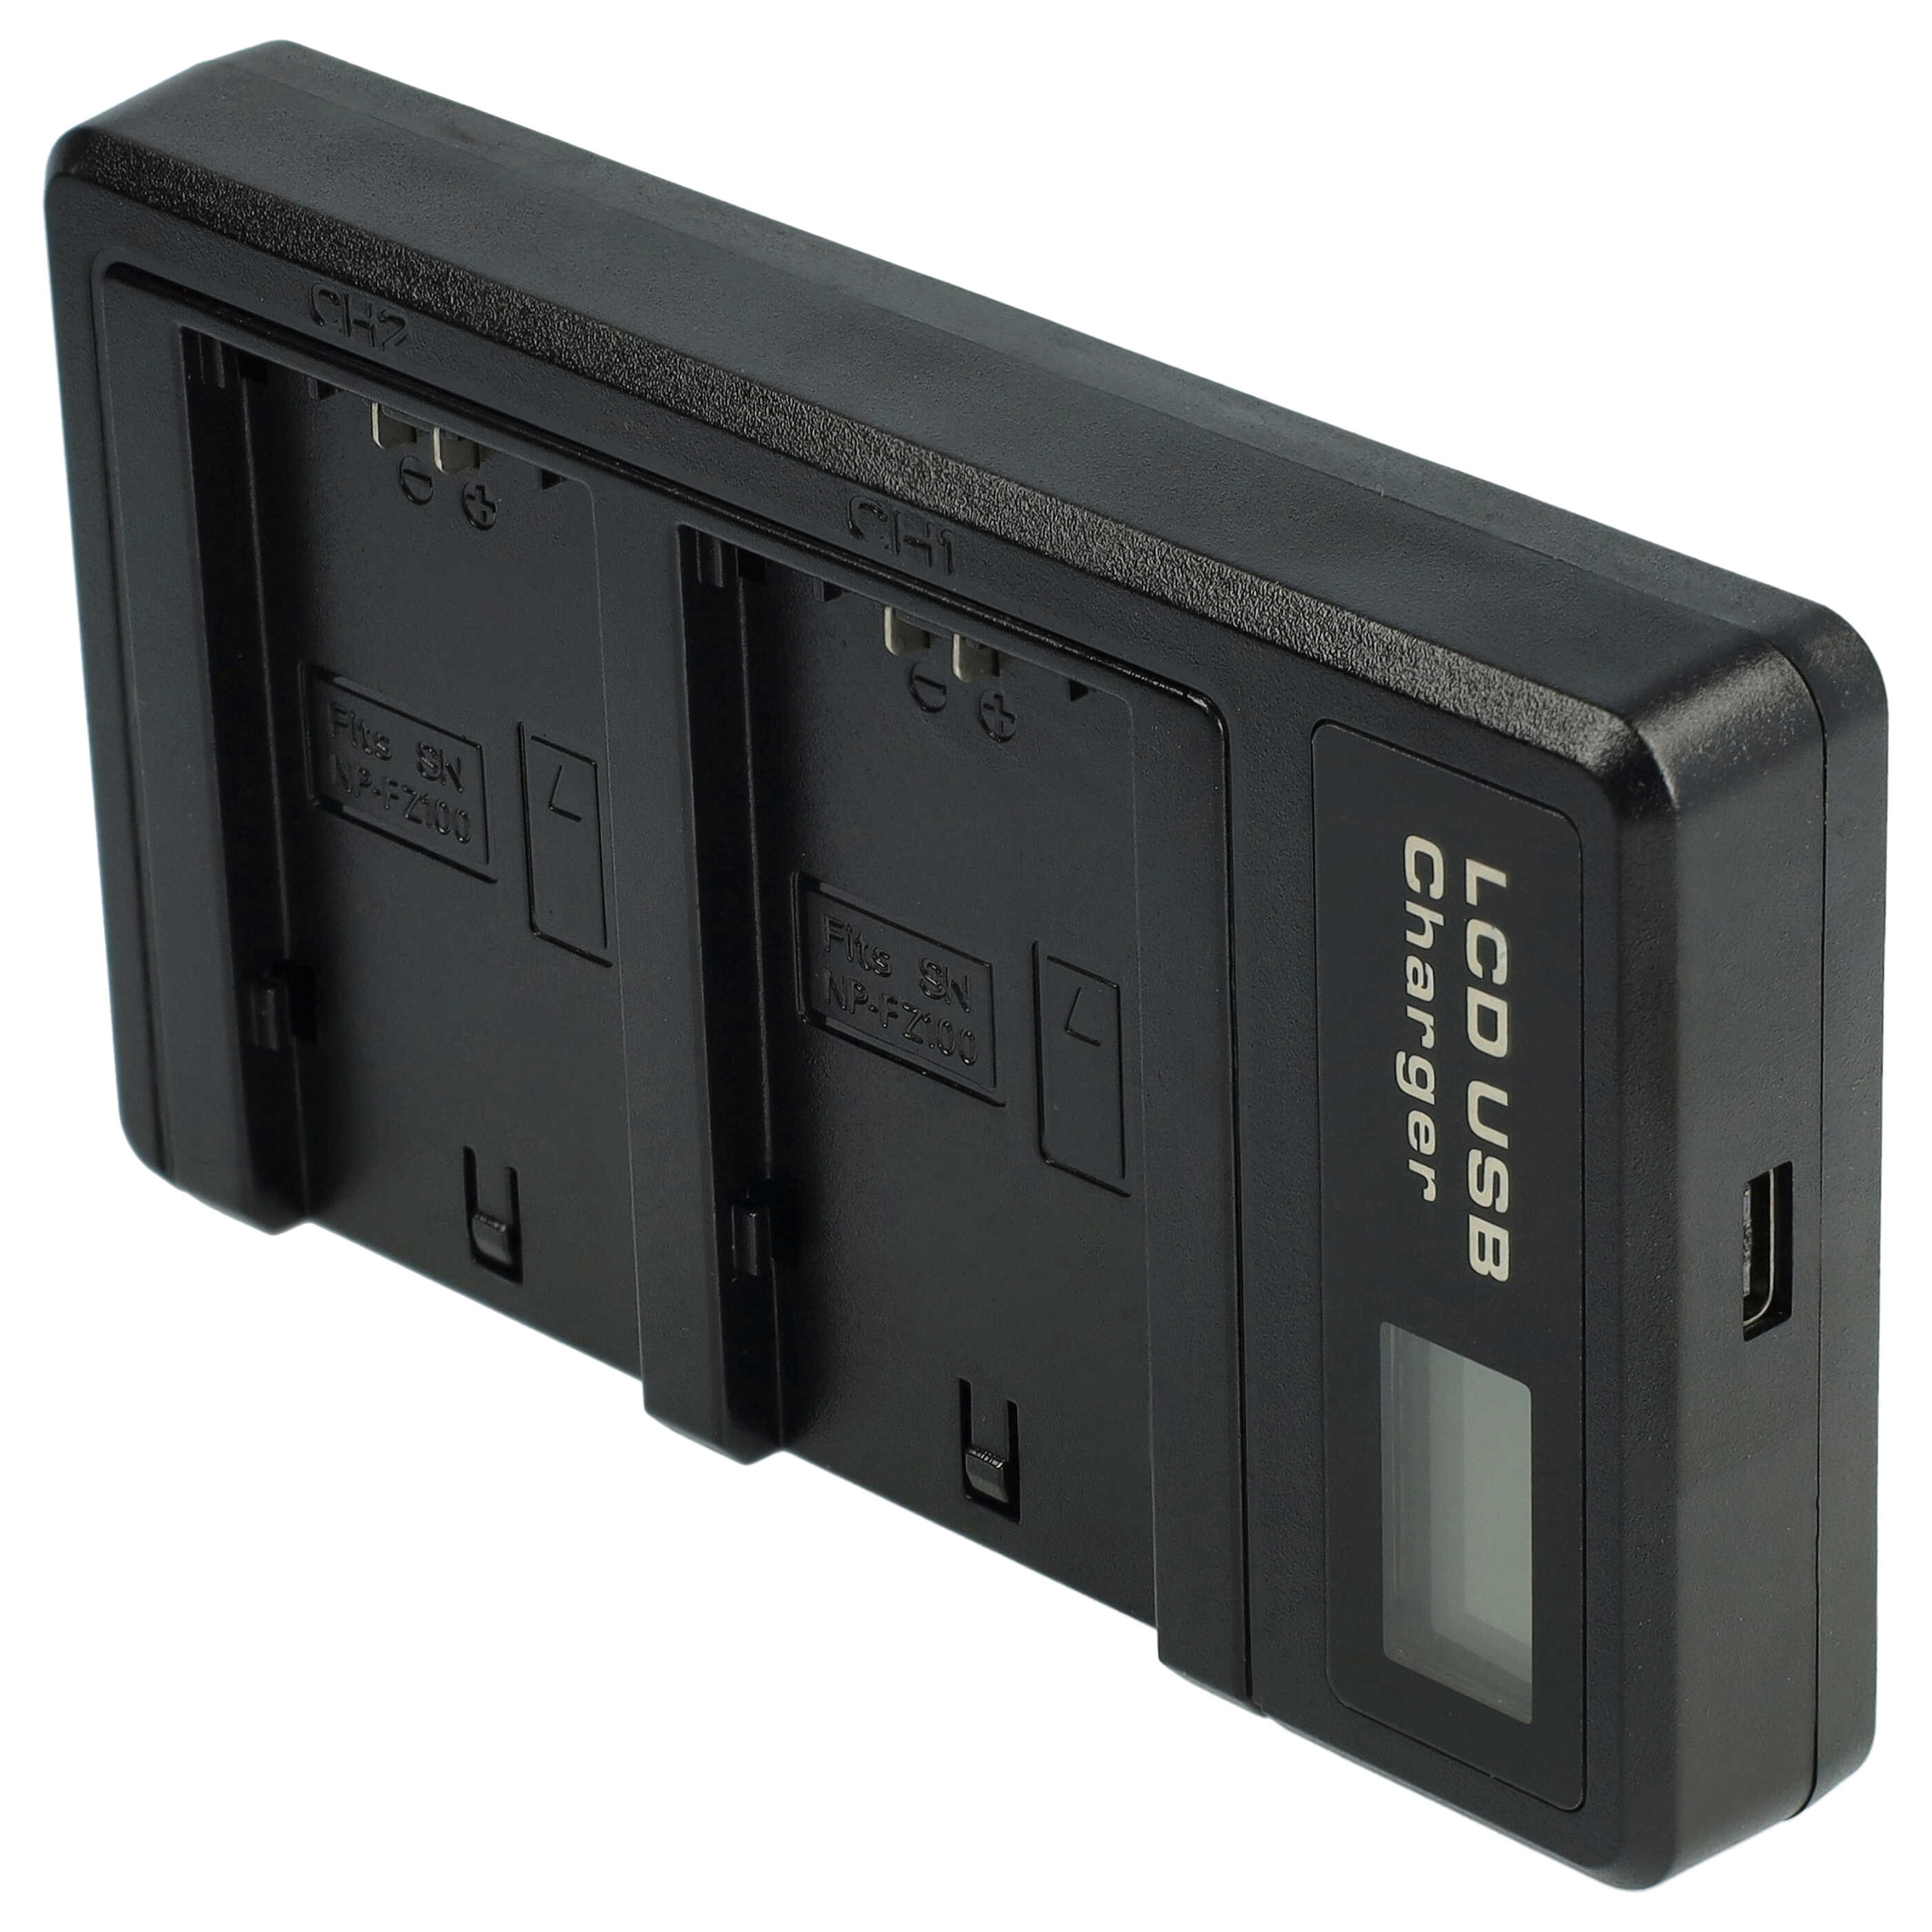 Akku Ladegerät passend für Sony NP-FZ100 Kamera u.a. - 0,5 A, 8,4 V